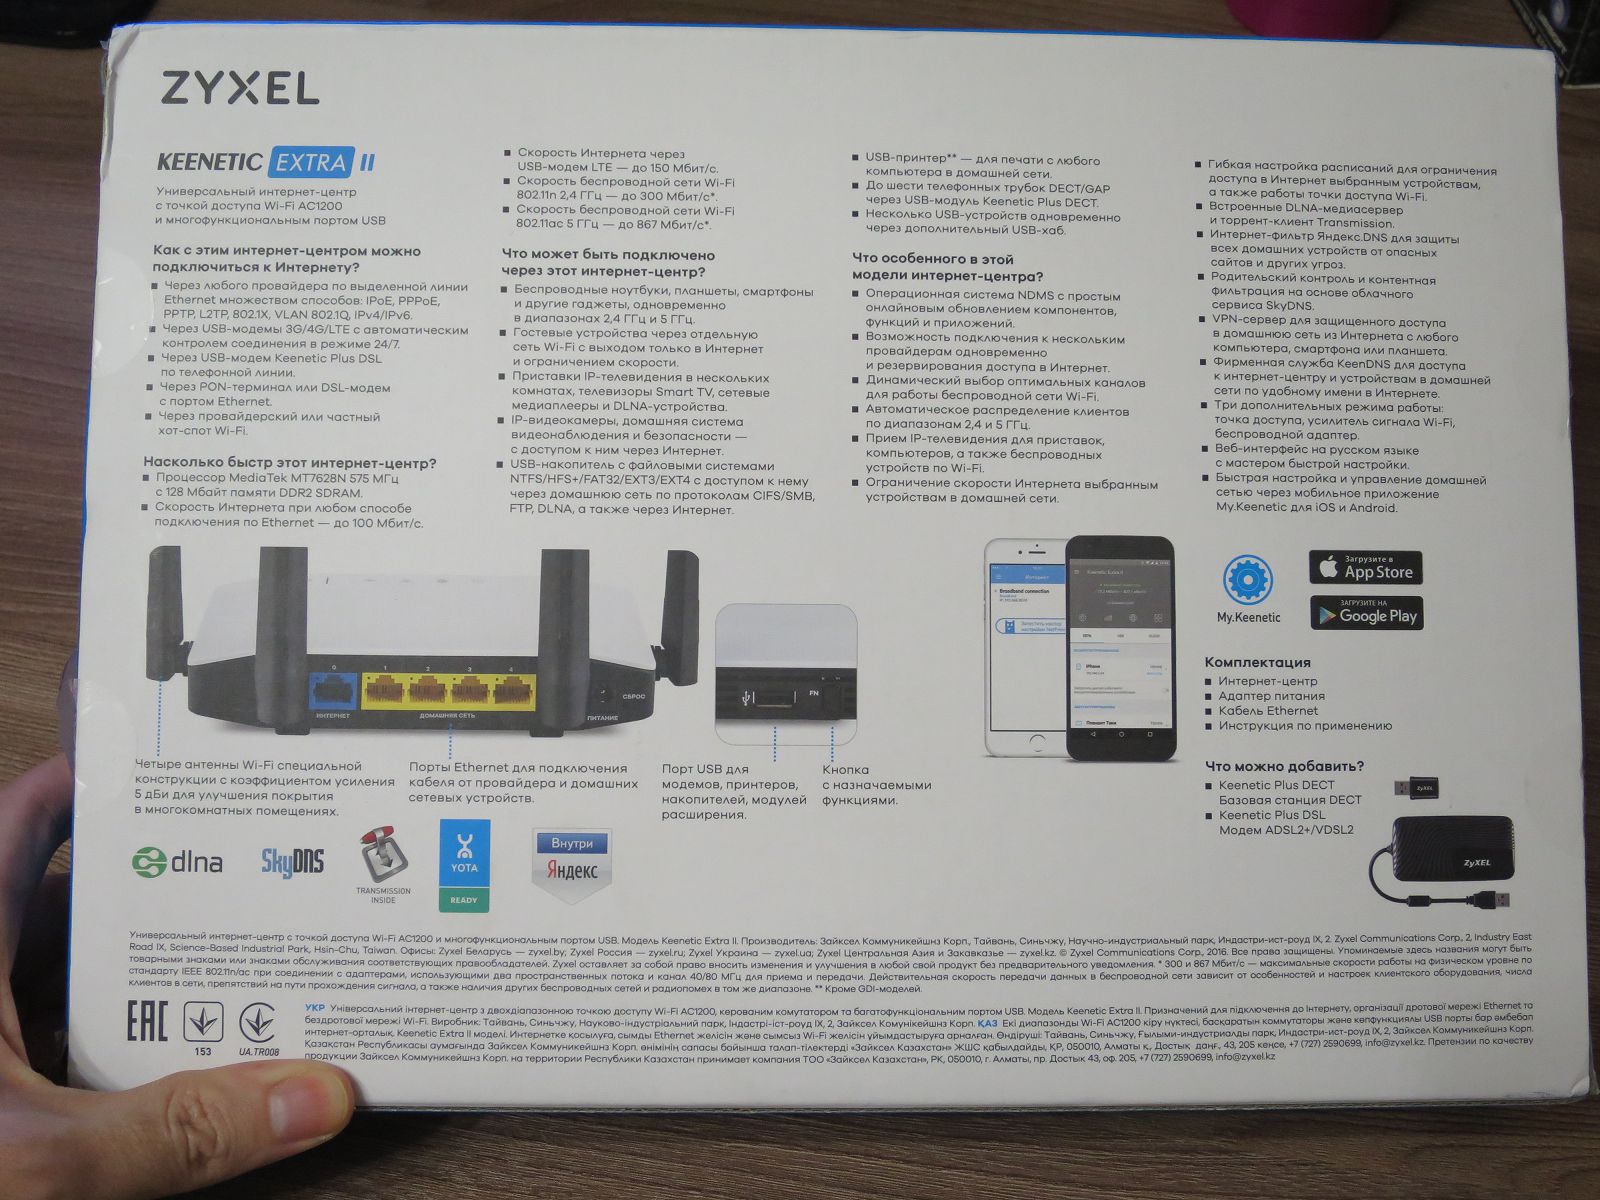 Wi-Fi роуетр Zyxel Keenetic Extra II